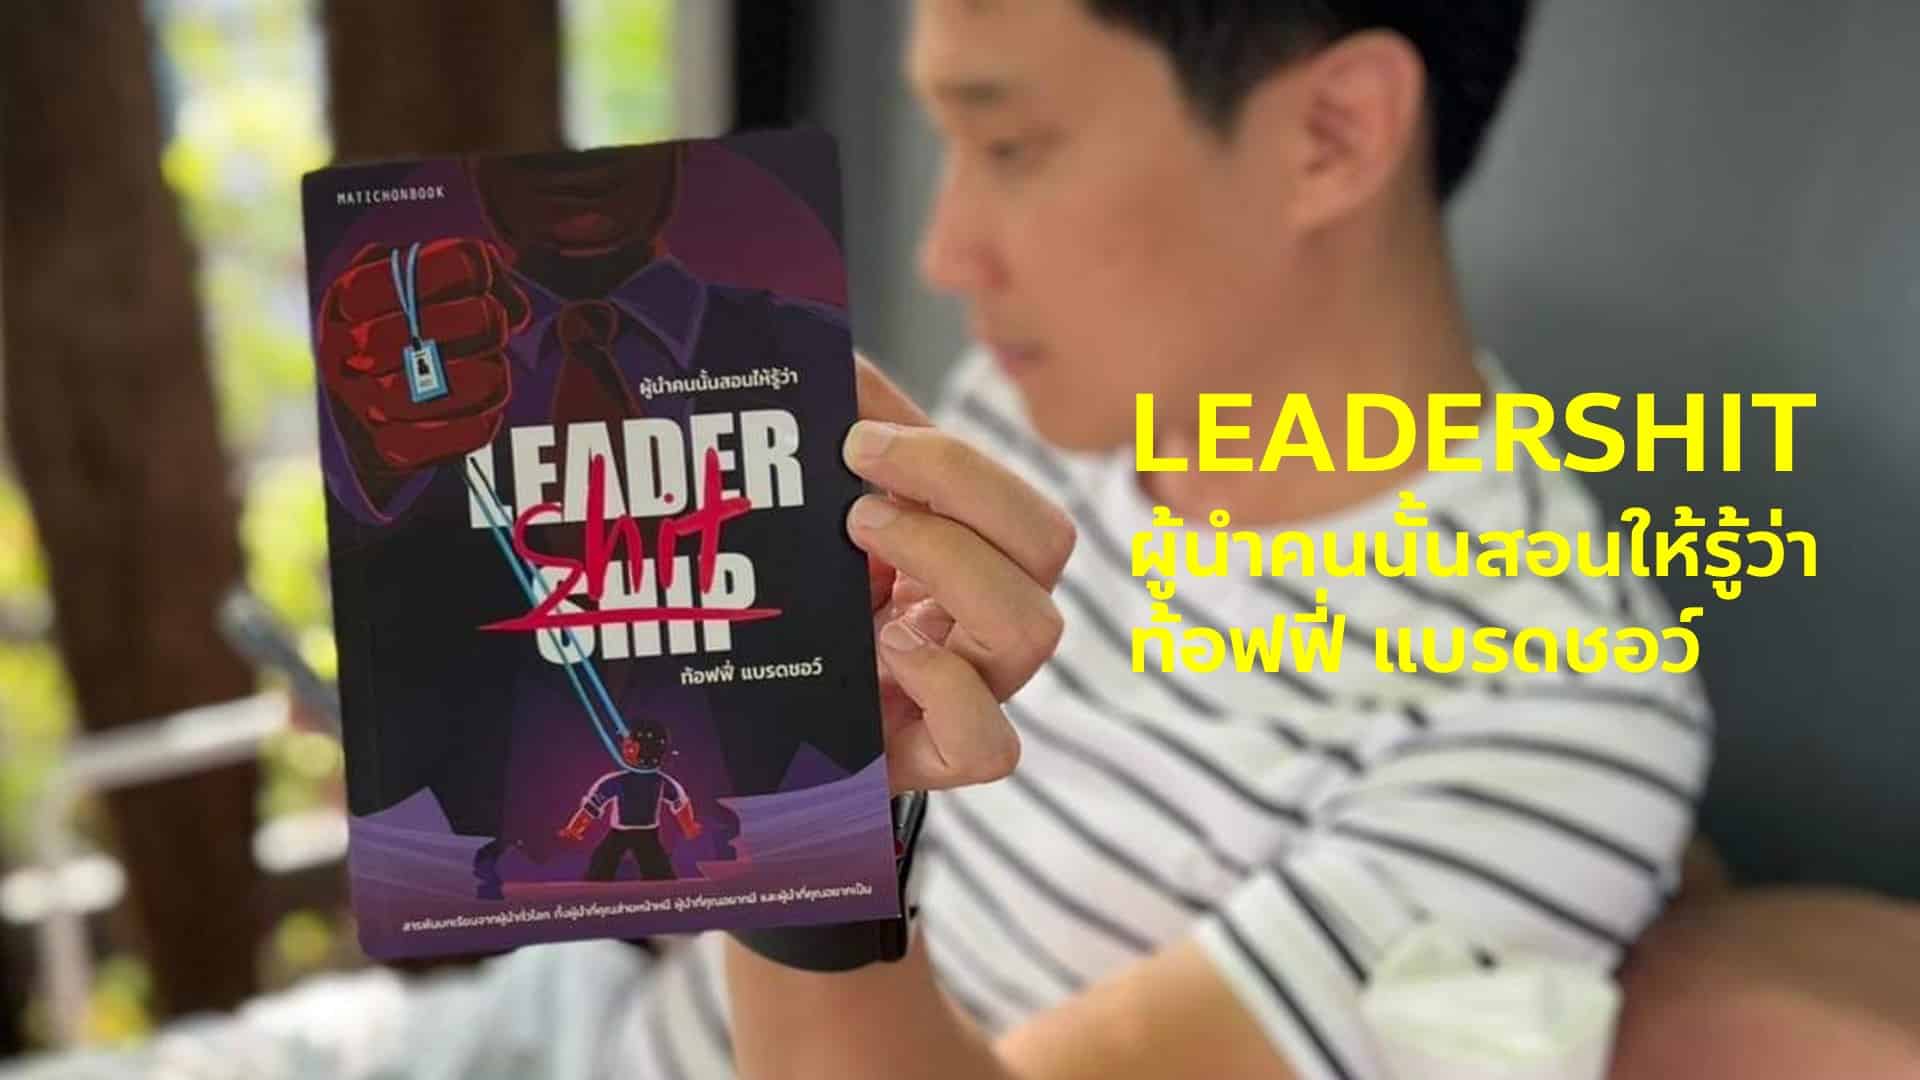 สรุปหนังสือ Leadershit ผู้นำคนนั้นสอนให้รู้ว่า สารพันบทเรียนจากการทำงานและโลกยุคใหม่ที่อยากให้ "ผู้นำ" ทุกคนได้อ่าน - ท้อฟฟี่ แบรดชอว์